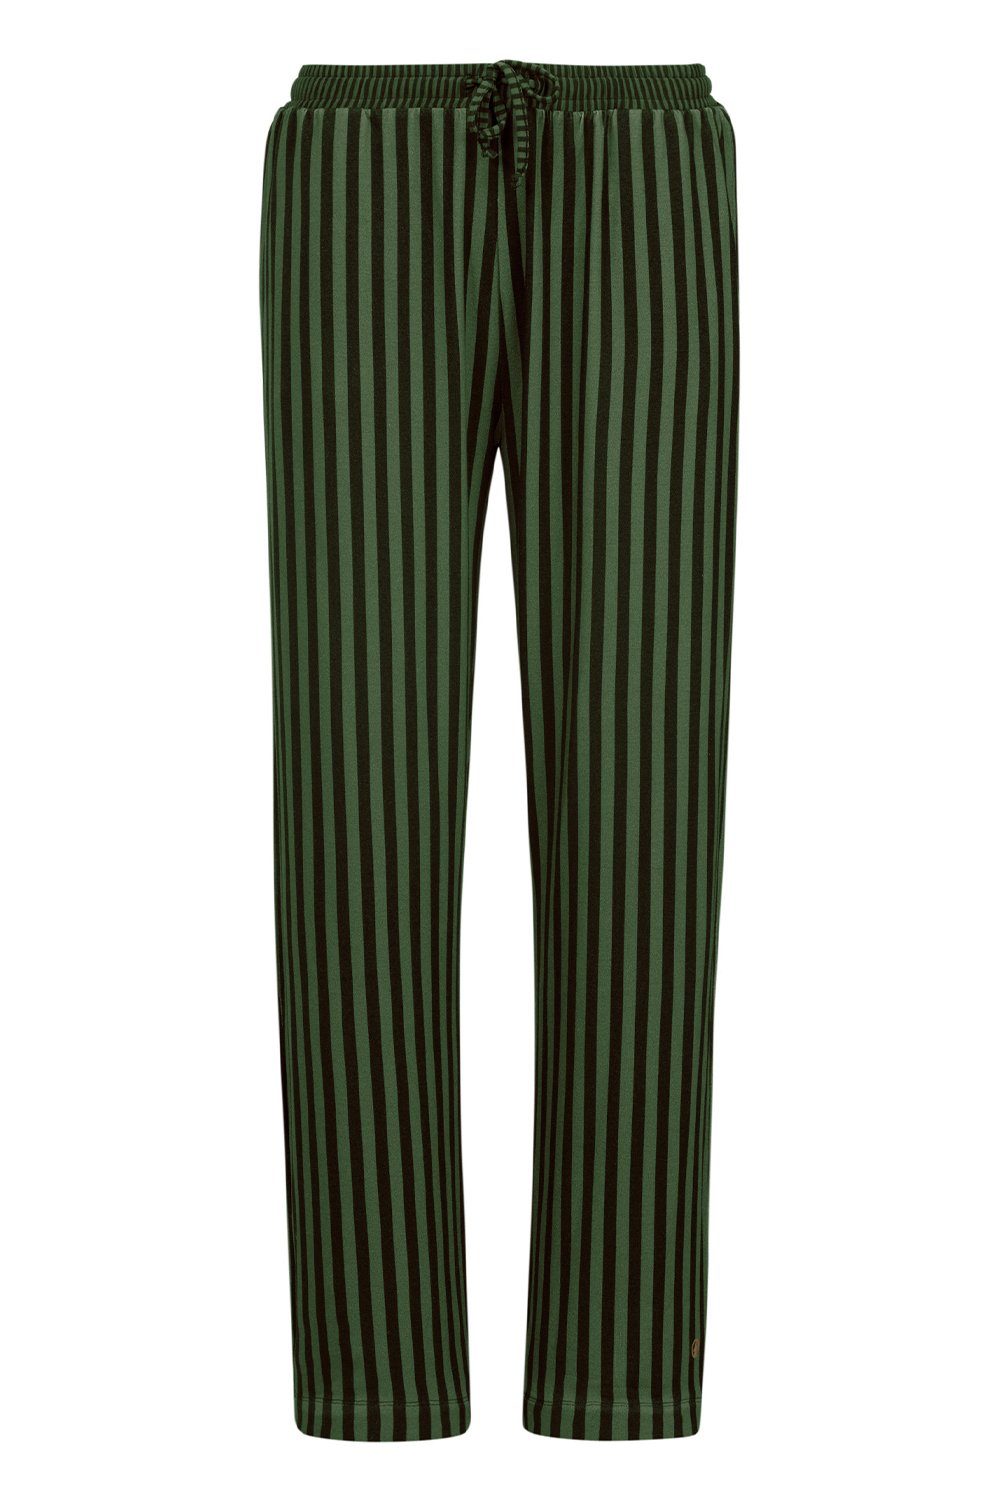 dark Studio Belin Loungehose Trousers 51500718-734 PiP green Sumo Long Stripe